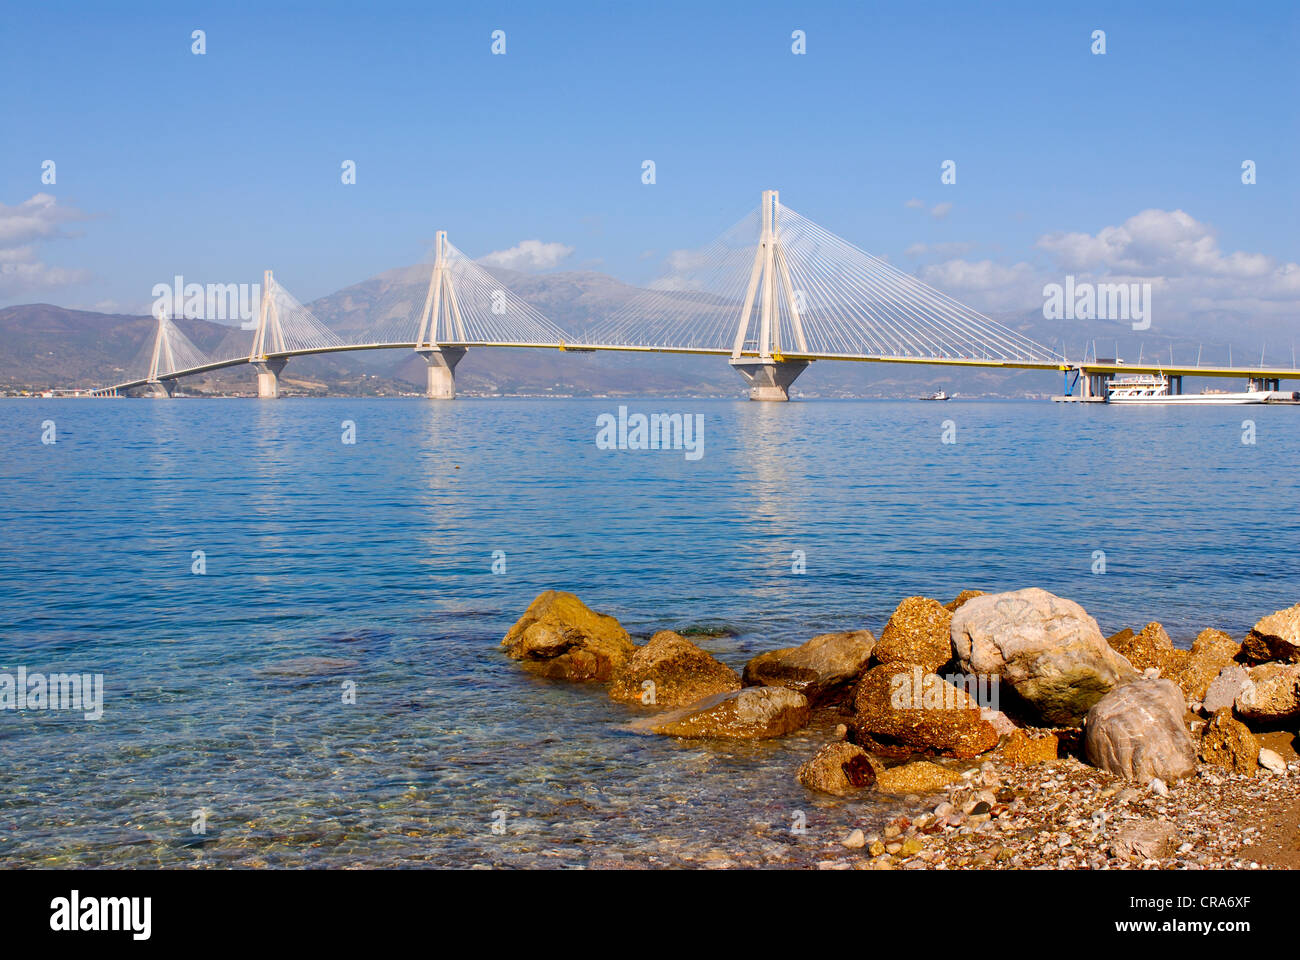 El Río Andirrio puente que une el Peloponeso con la Grecia continental, el Golfo de Corinto, Grecia, Europa Foto de stock